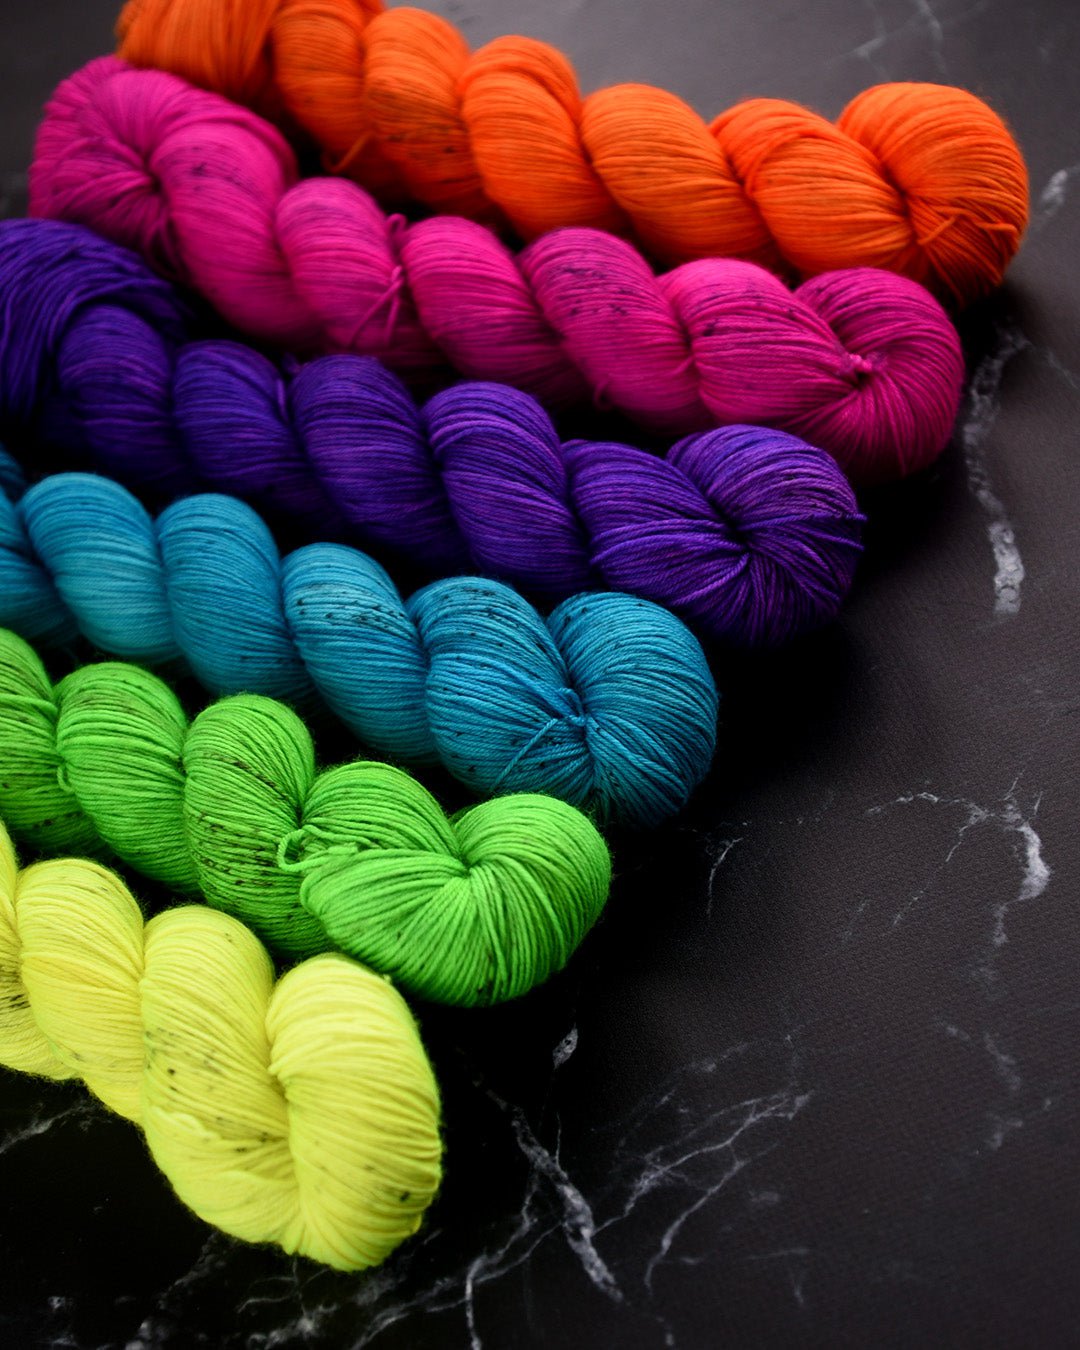 Electric orange yarn, neon orange yarn, neon yarn with speckles, bright  orange hand dyed yarn. - Destination Yarn